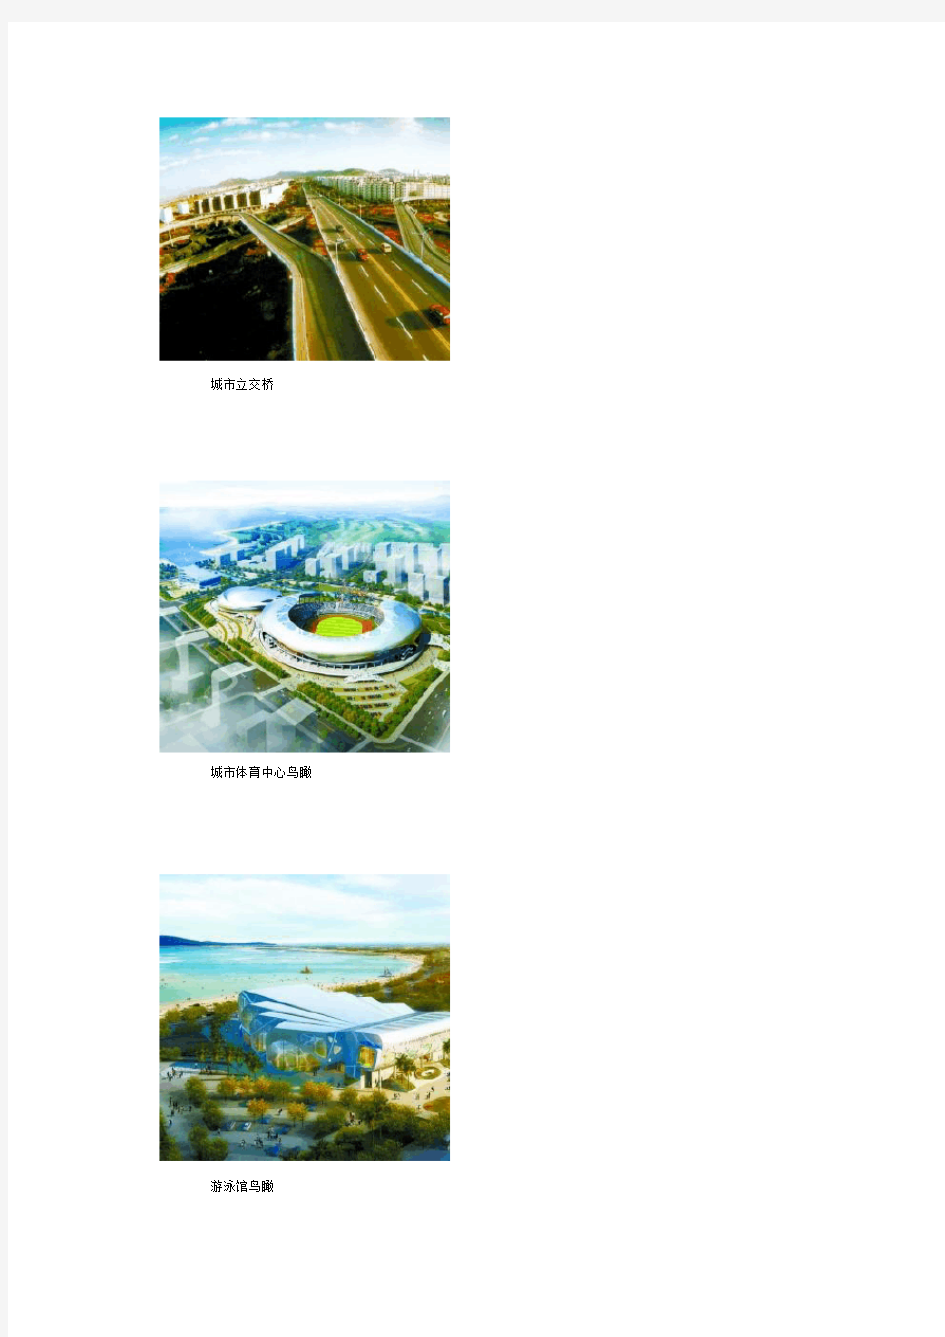 解读《葫芦岛市城市总体规划(2005-2020)》